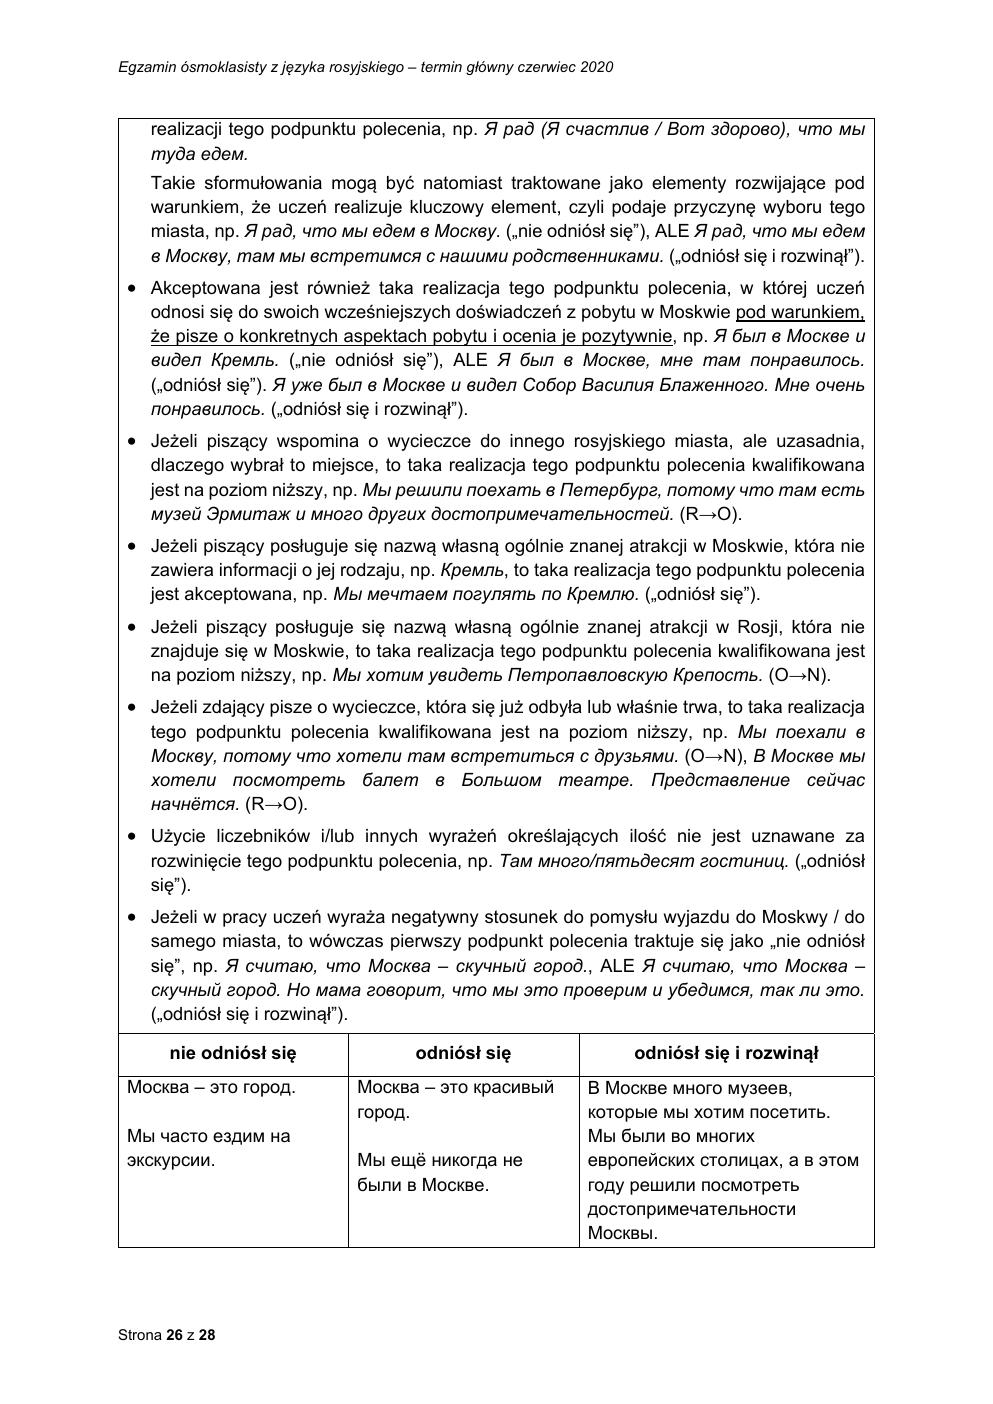 odpowiedzi - rosyjski - egzamin ósmoklasisty 2020-26